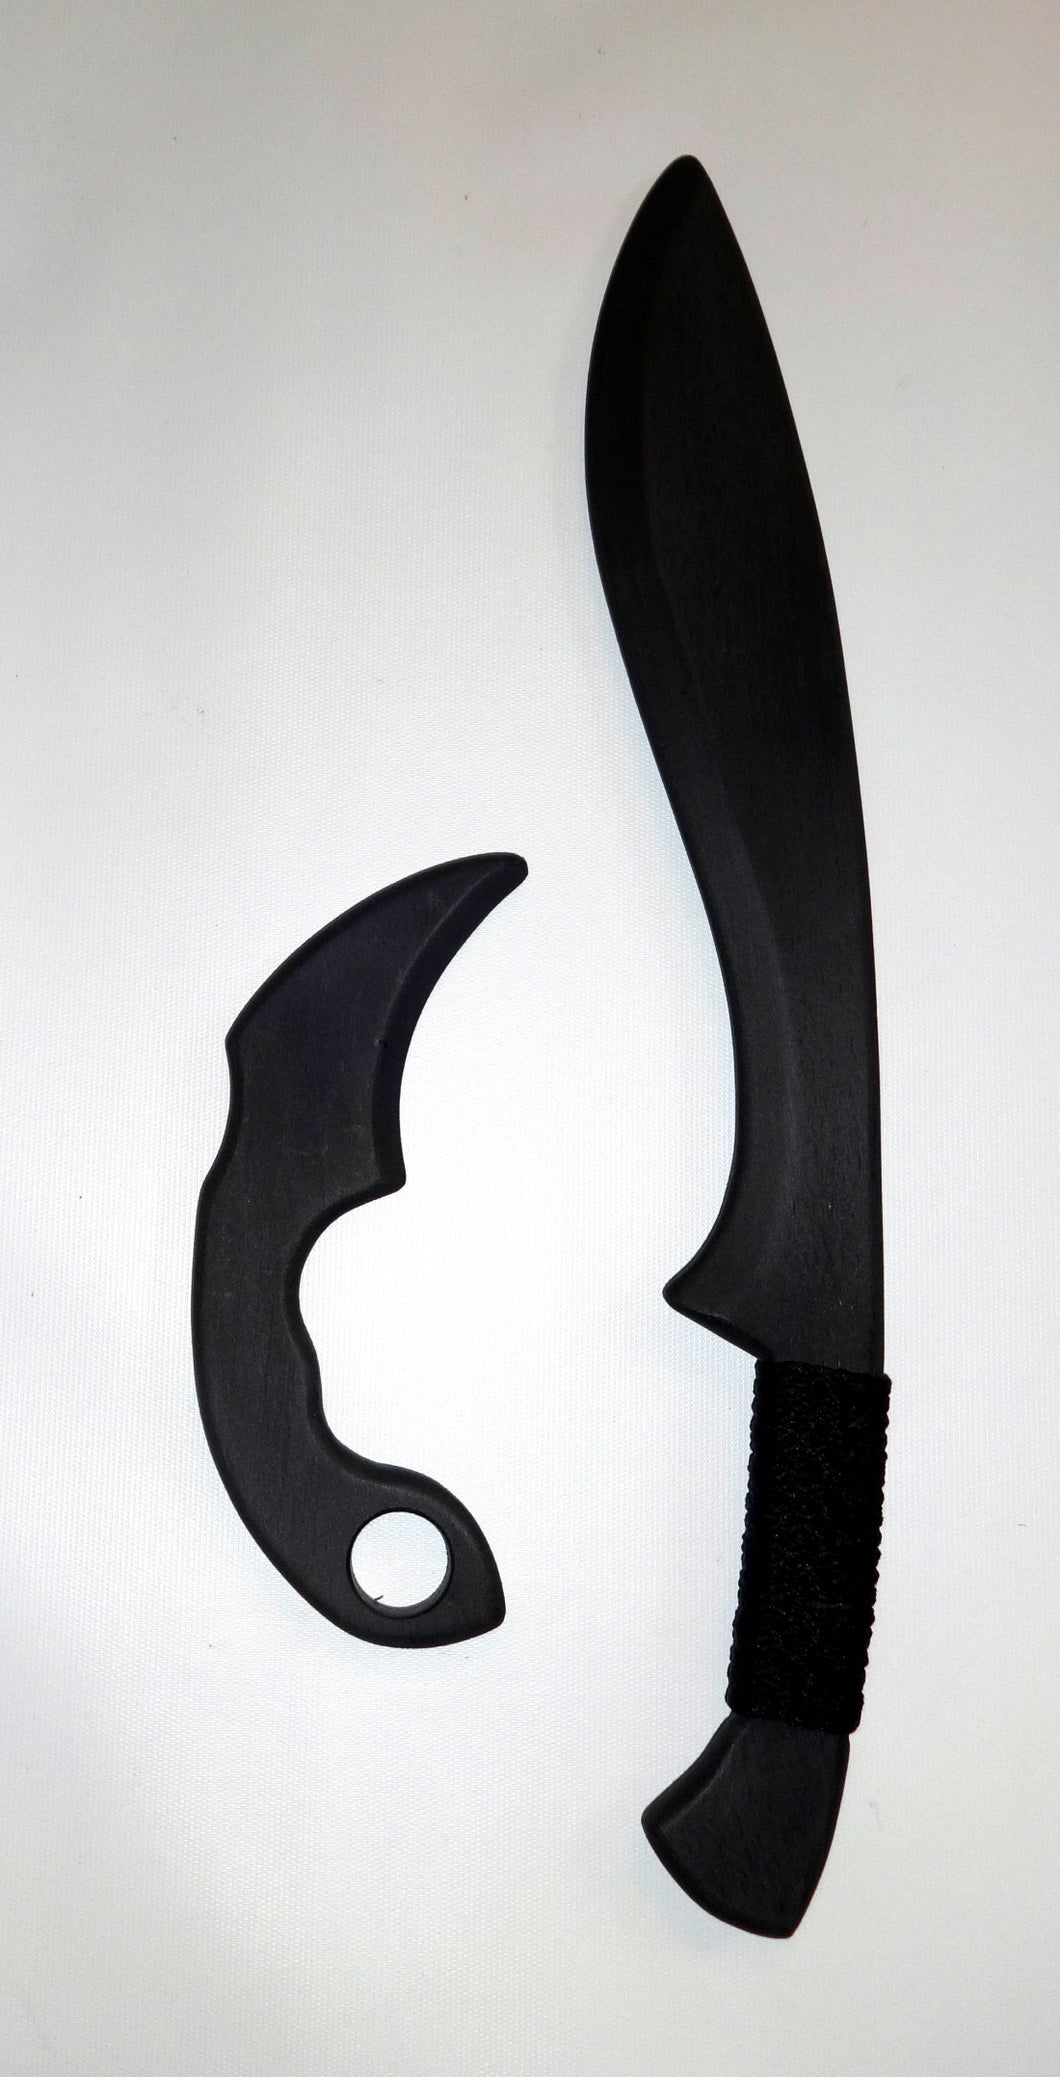 Training Kukri Sword Polypropylene Tactical Karambit Practice Knife Espada Daga Knives